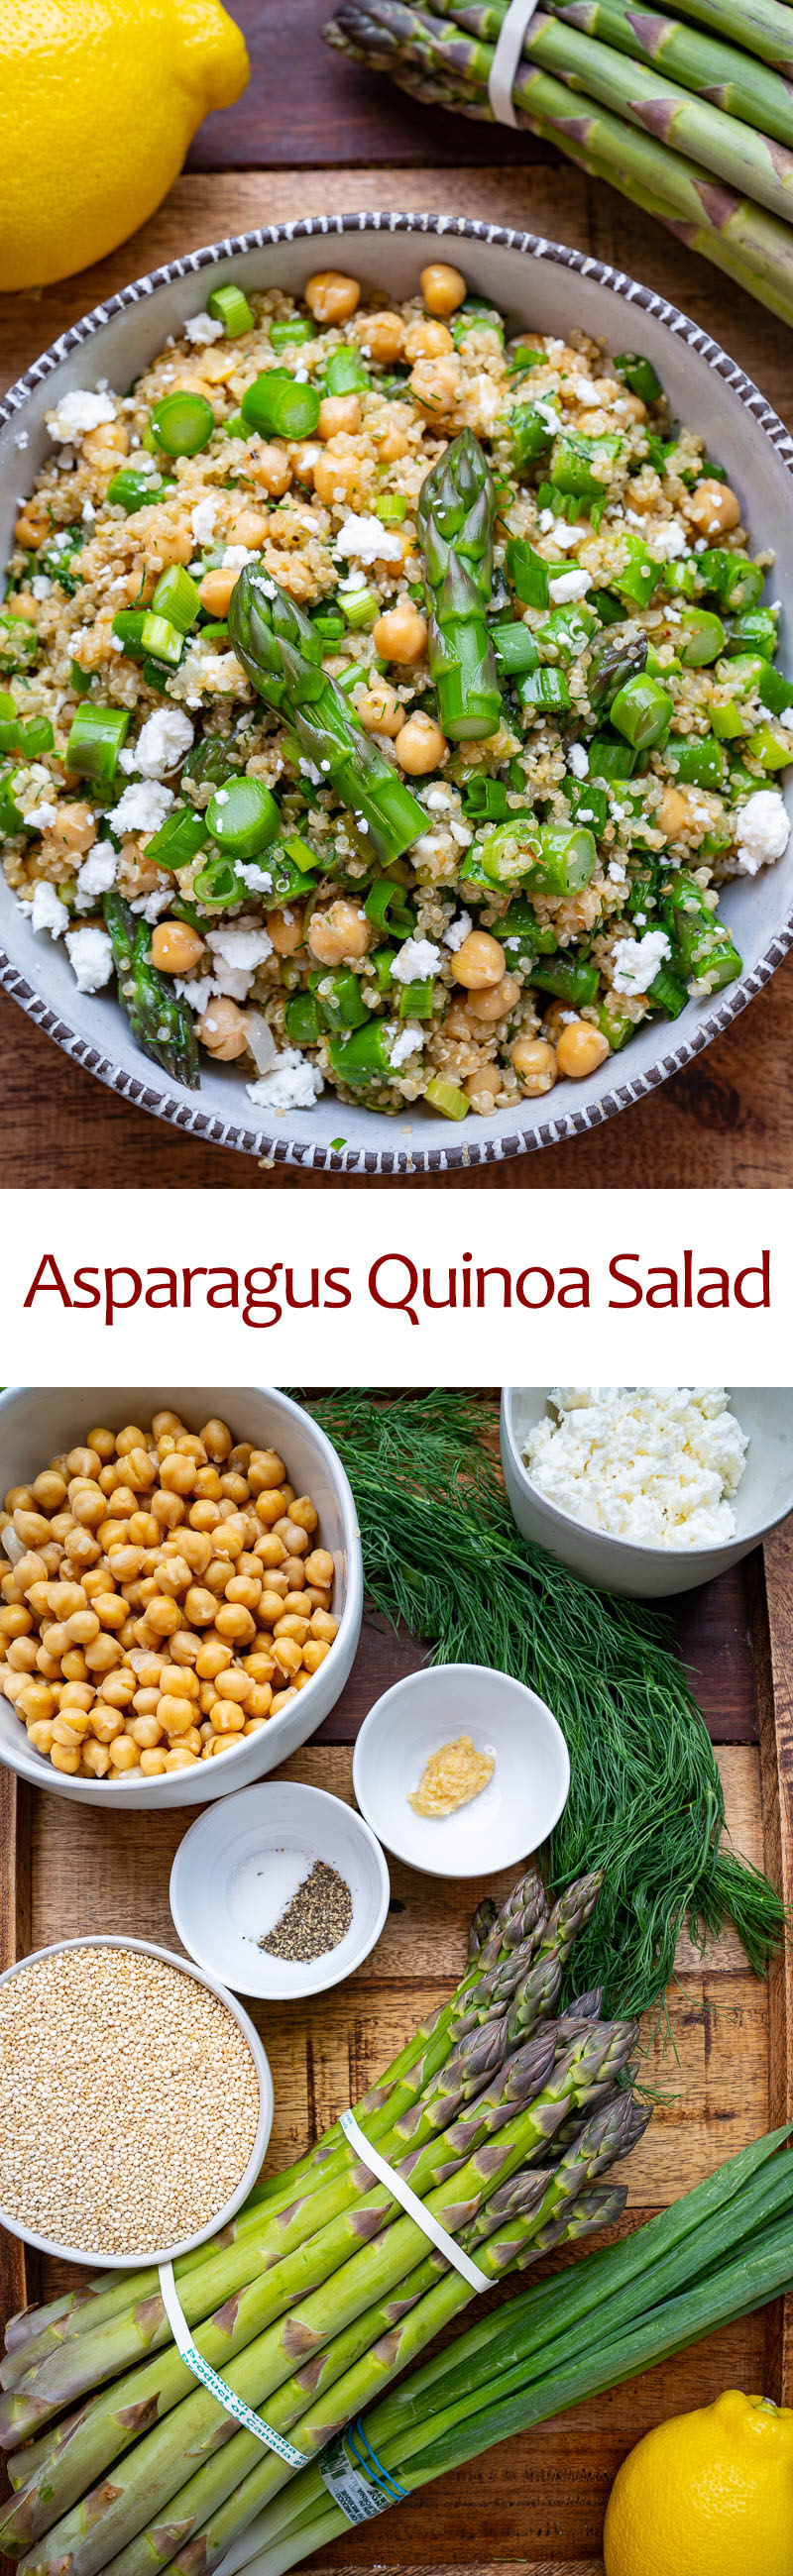 Asparagus Quinoa Salad